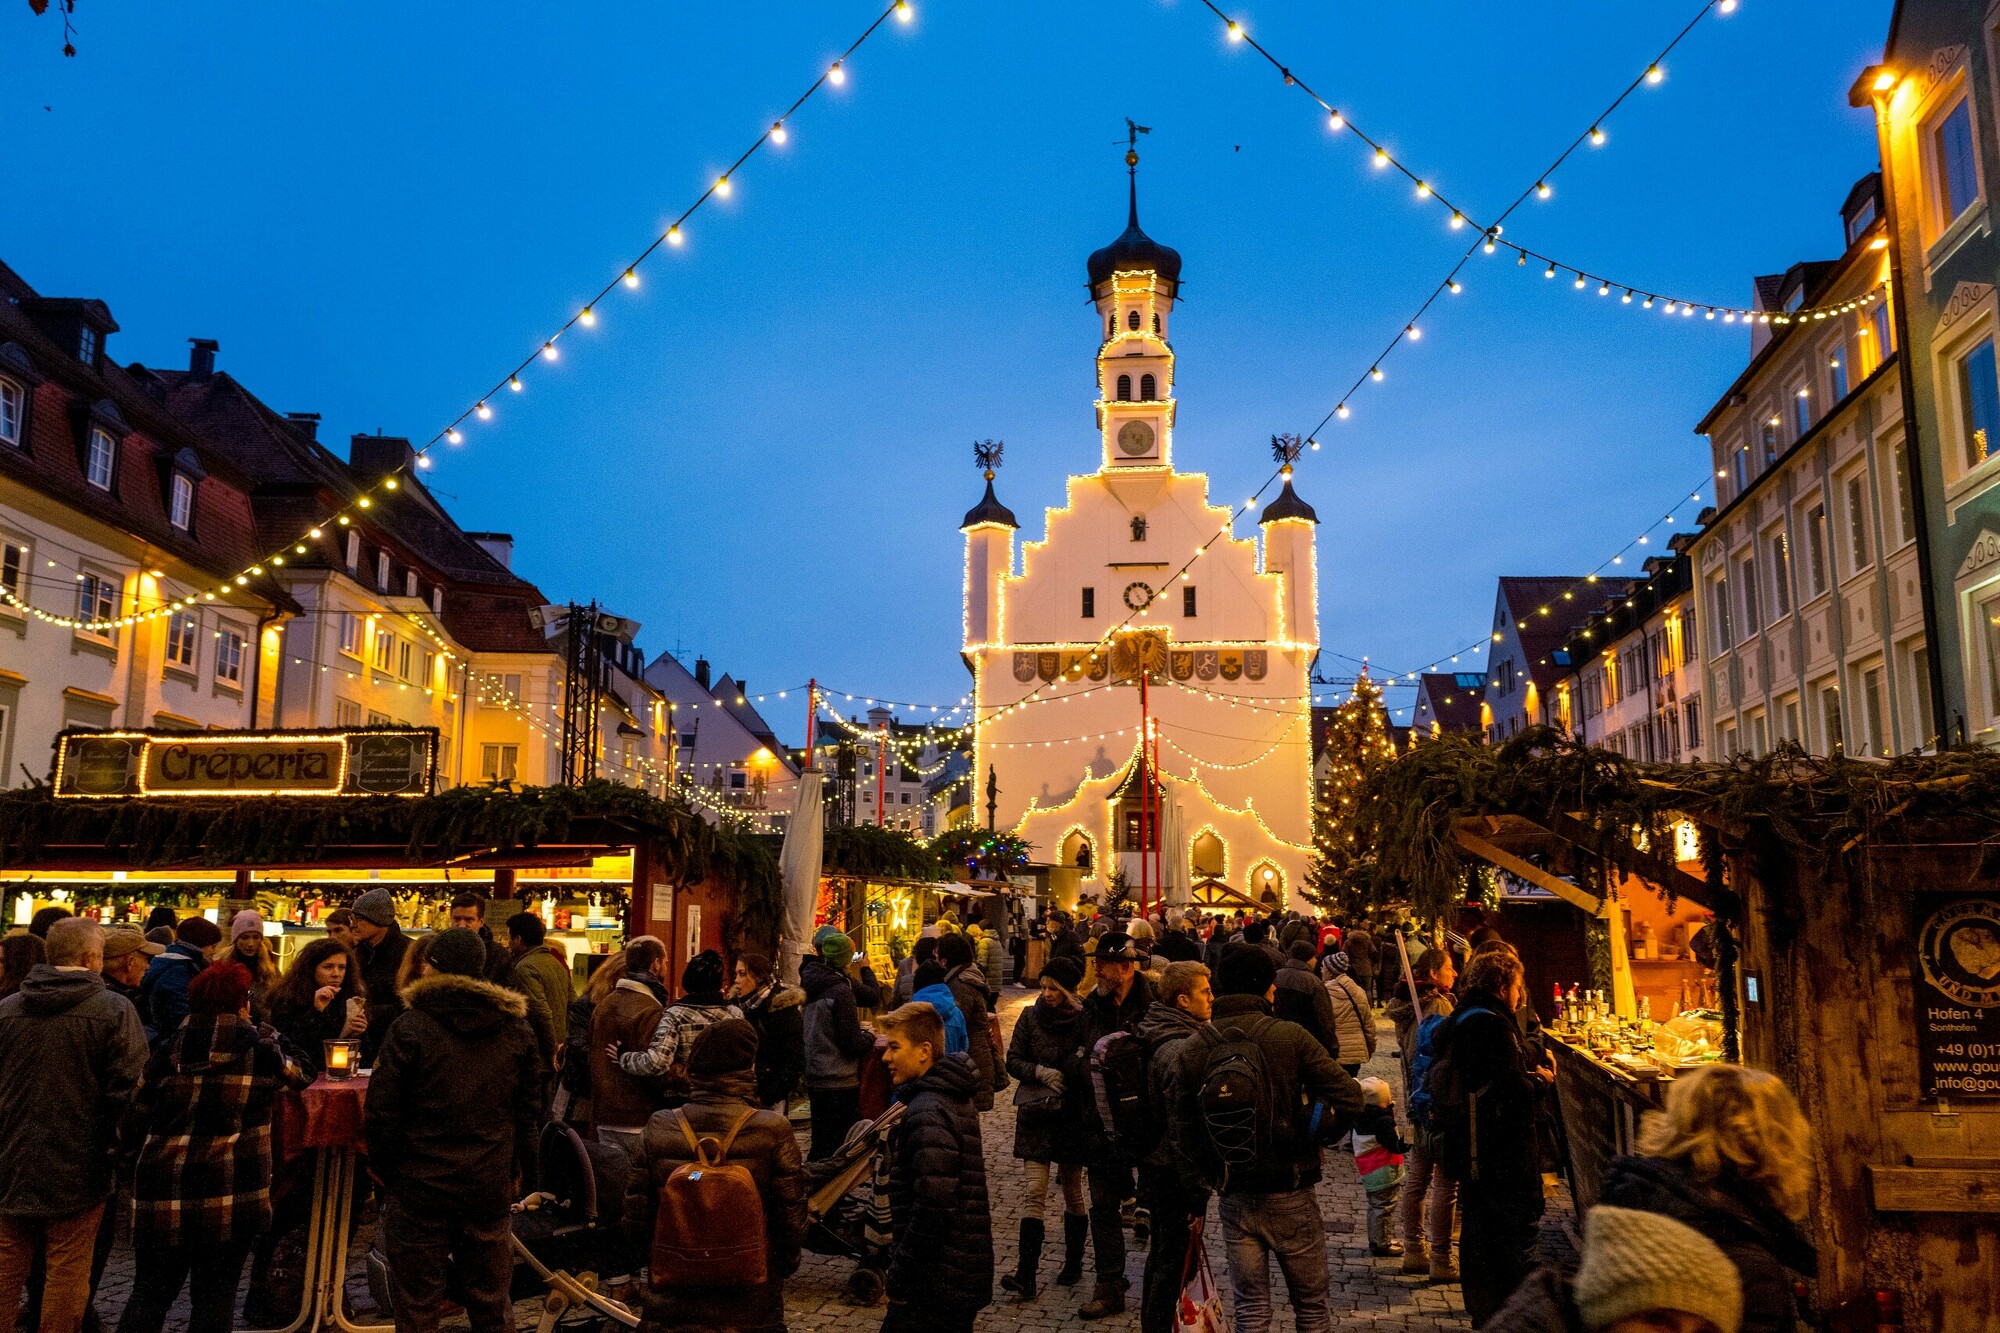 Rathausplatz in Kempten schön beleuchtet während dem Weihnachtsmarkt